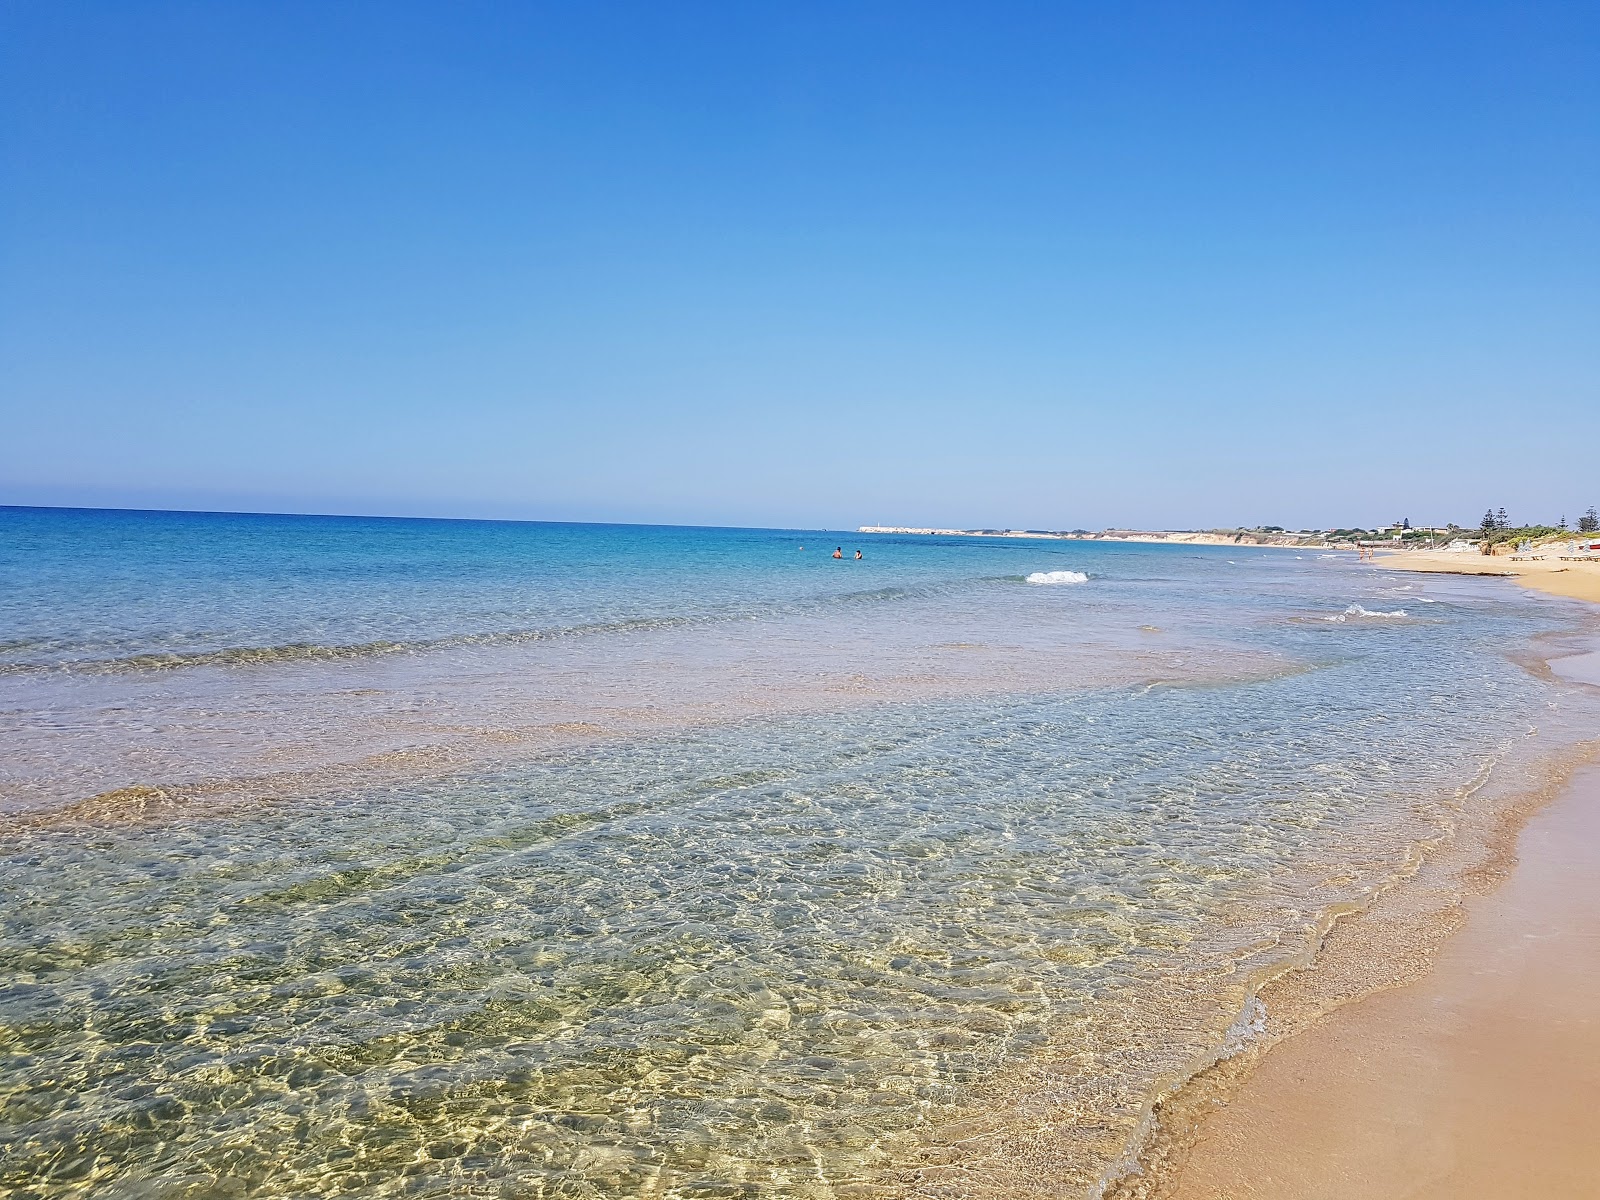 Carratois Plajı'in fotoğrafı kahverengi kum yüzey ile